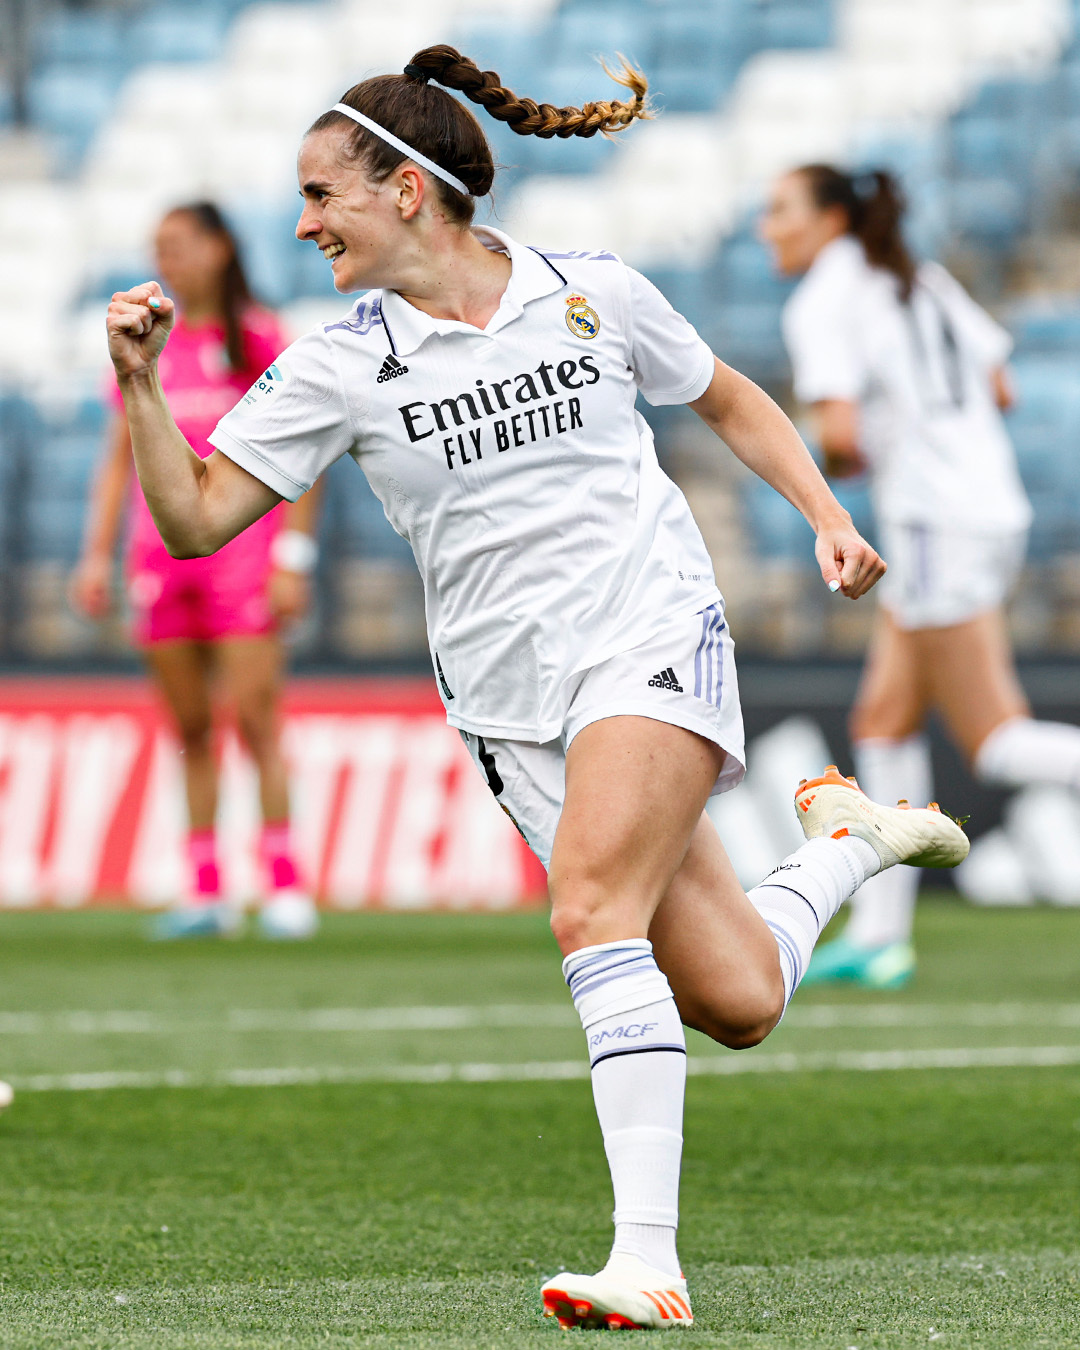 Teresa Abelleira celebrates her goal for Real Madrid against Madrid CFF